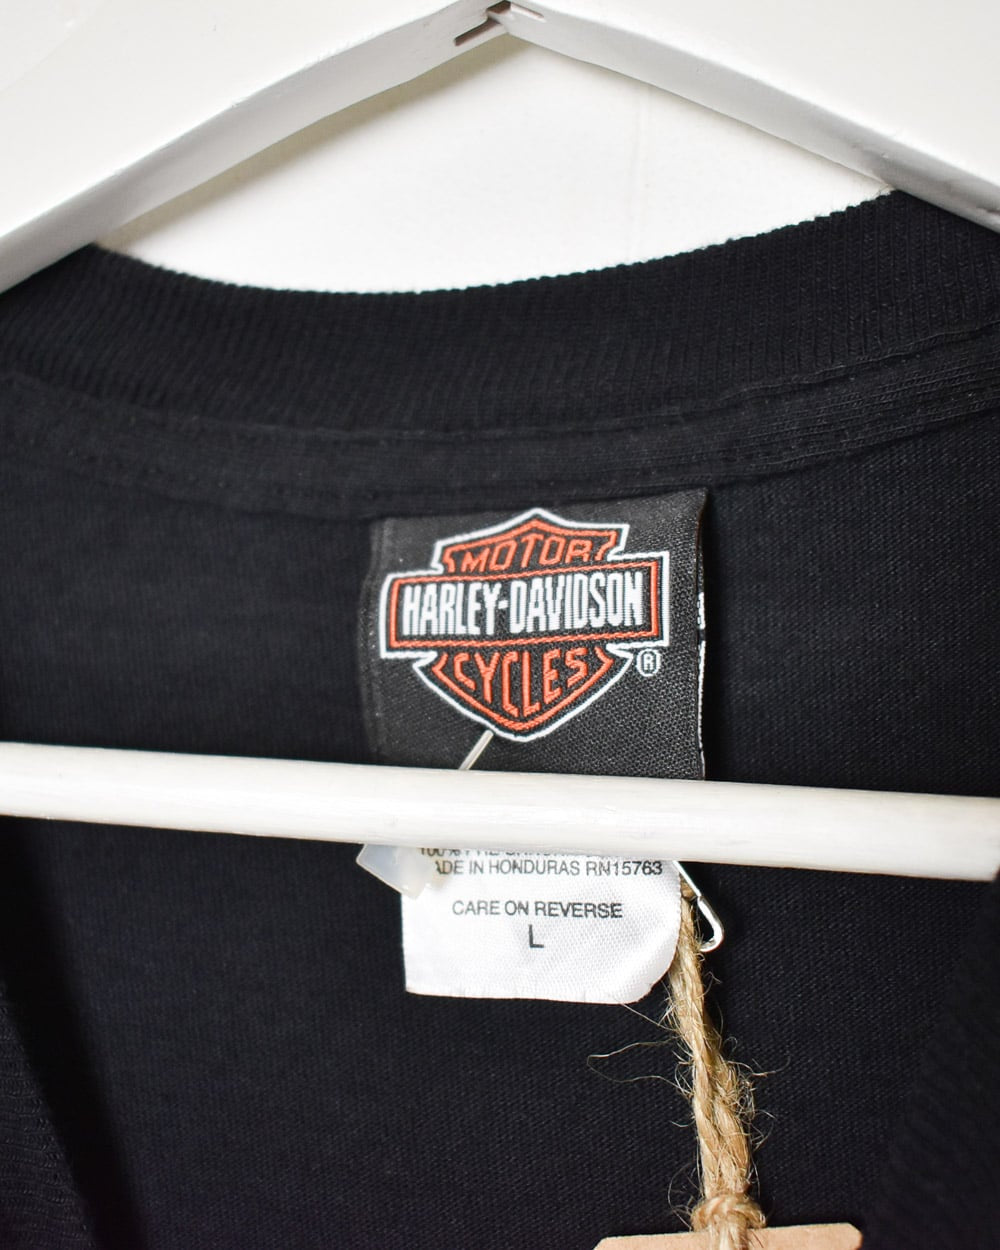 Black Harley Davidson Motorcycles T-Shirt - Large